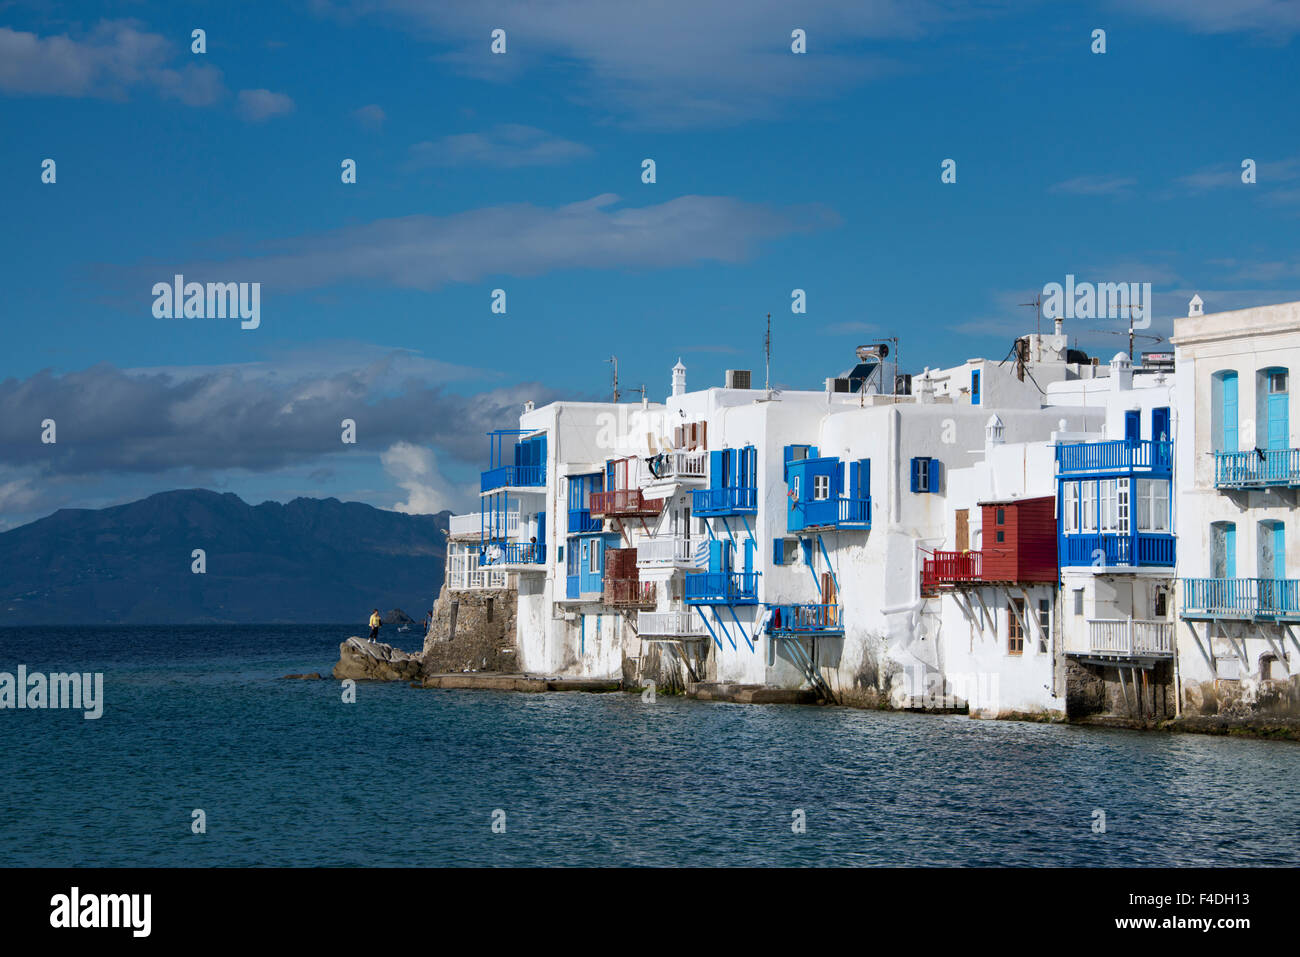 Grèce, les Cyclades, Mykonos, Hora. La petite Venise avec ses maisons colorées le long de la mer Égée. Tailles disponibles (grand format). Banque D'Images